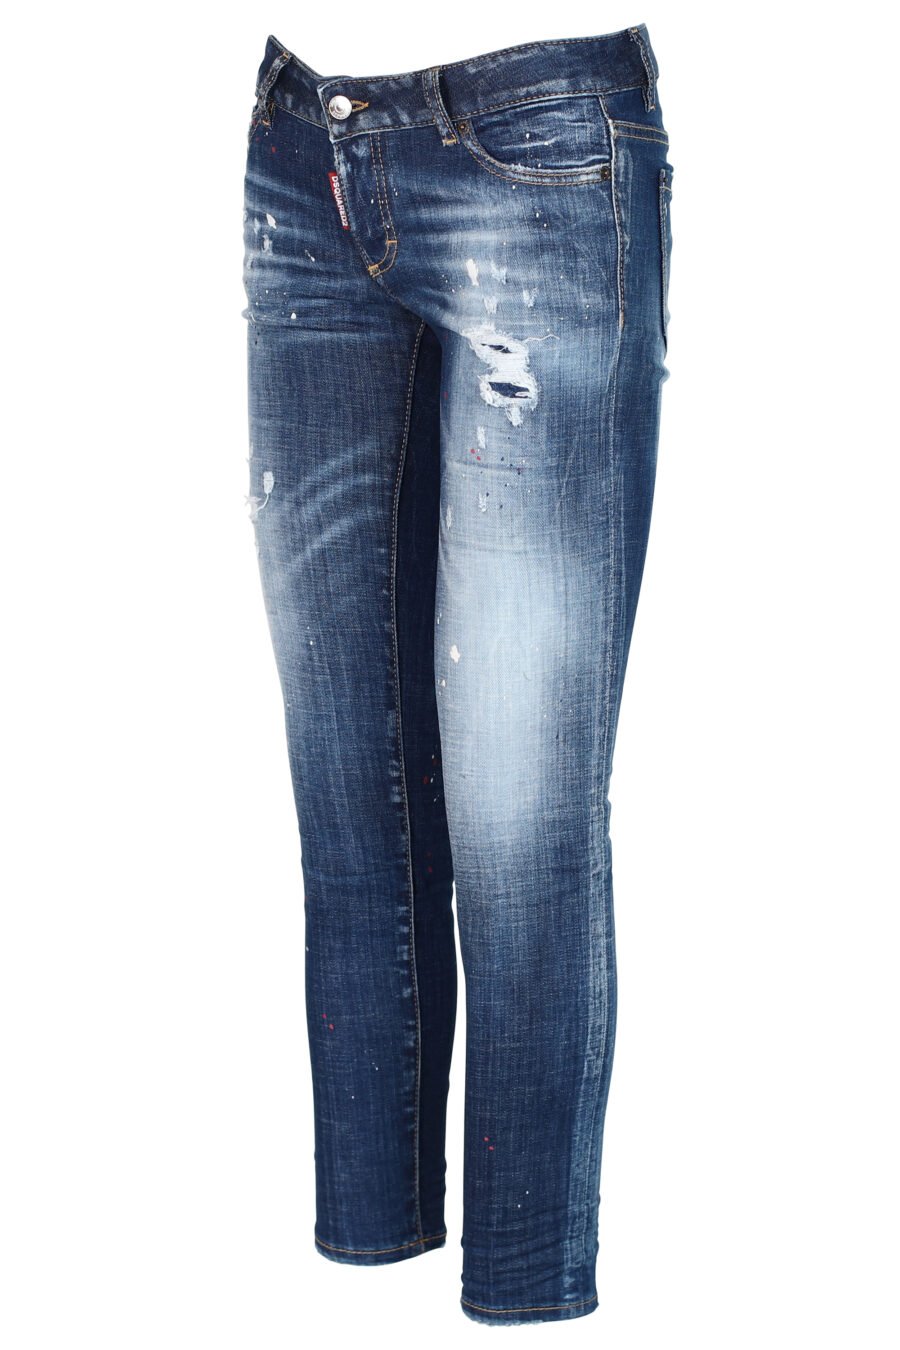 Jeans "Jennifer Jean" bleu avec éclaboussures de peinture et effet usé - 8052134937259 2